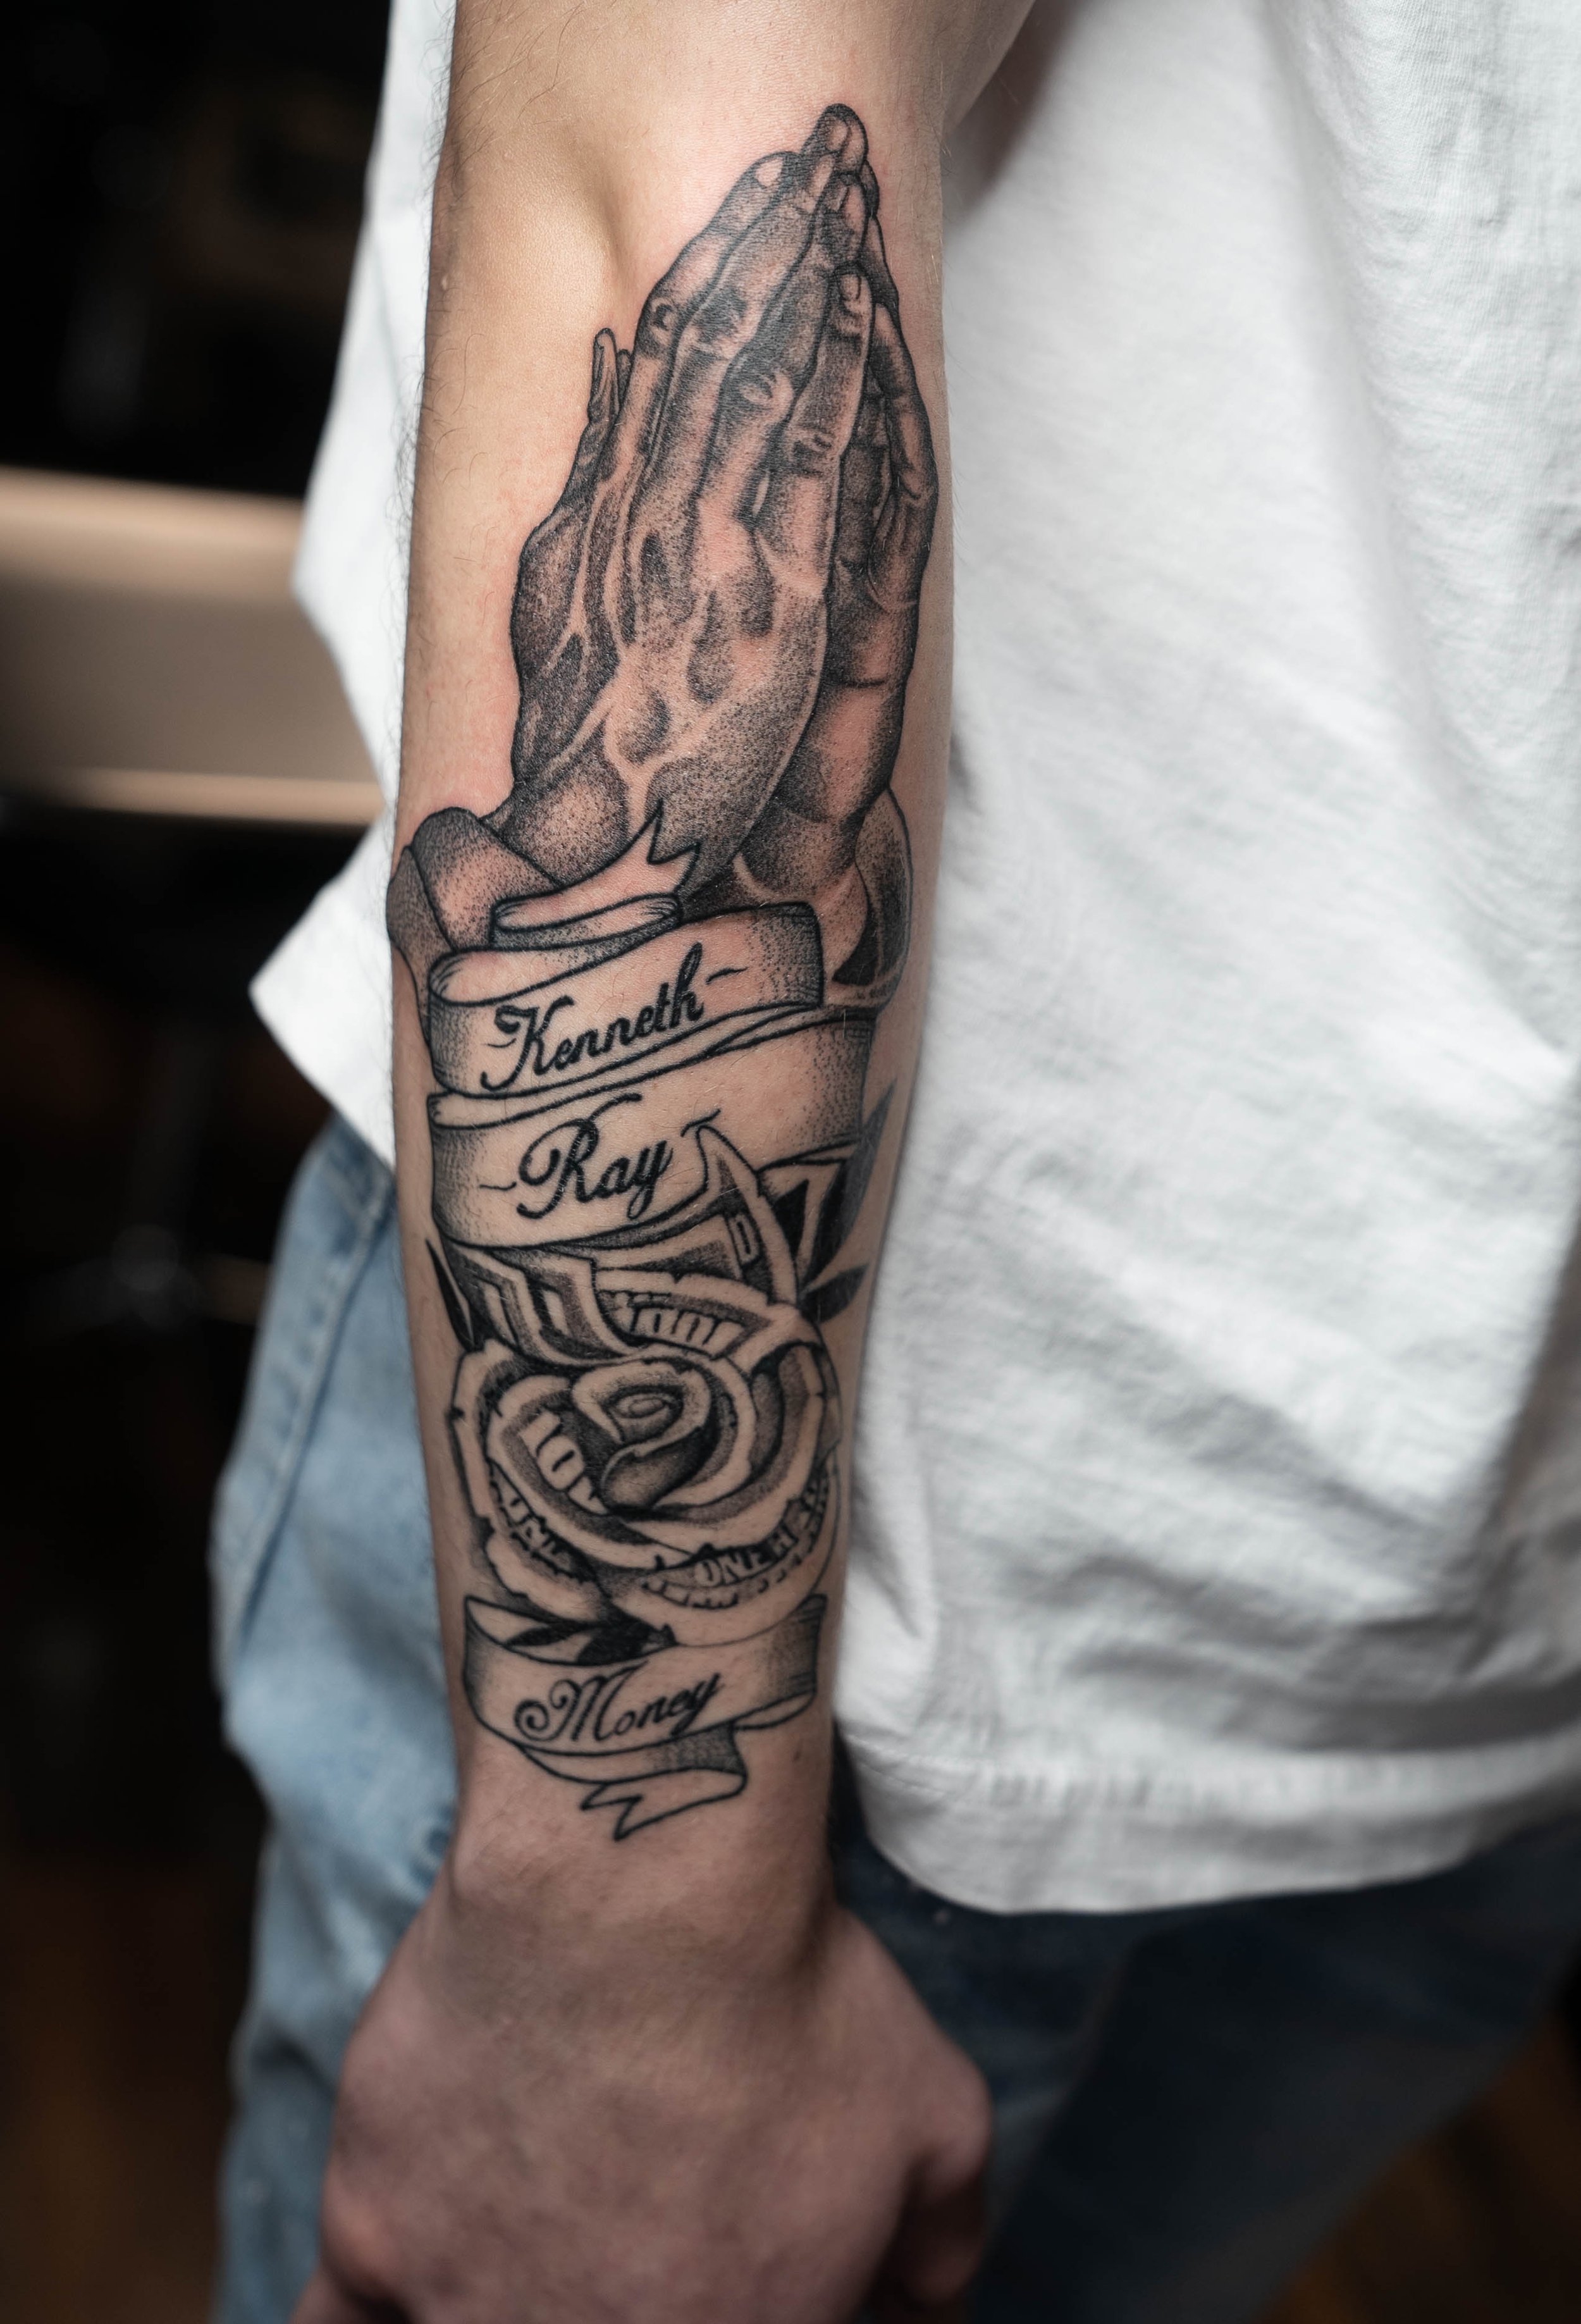 Tattoo uploaded by Thomas carton • Tattoodo